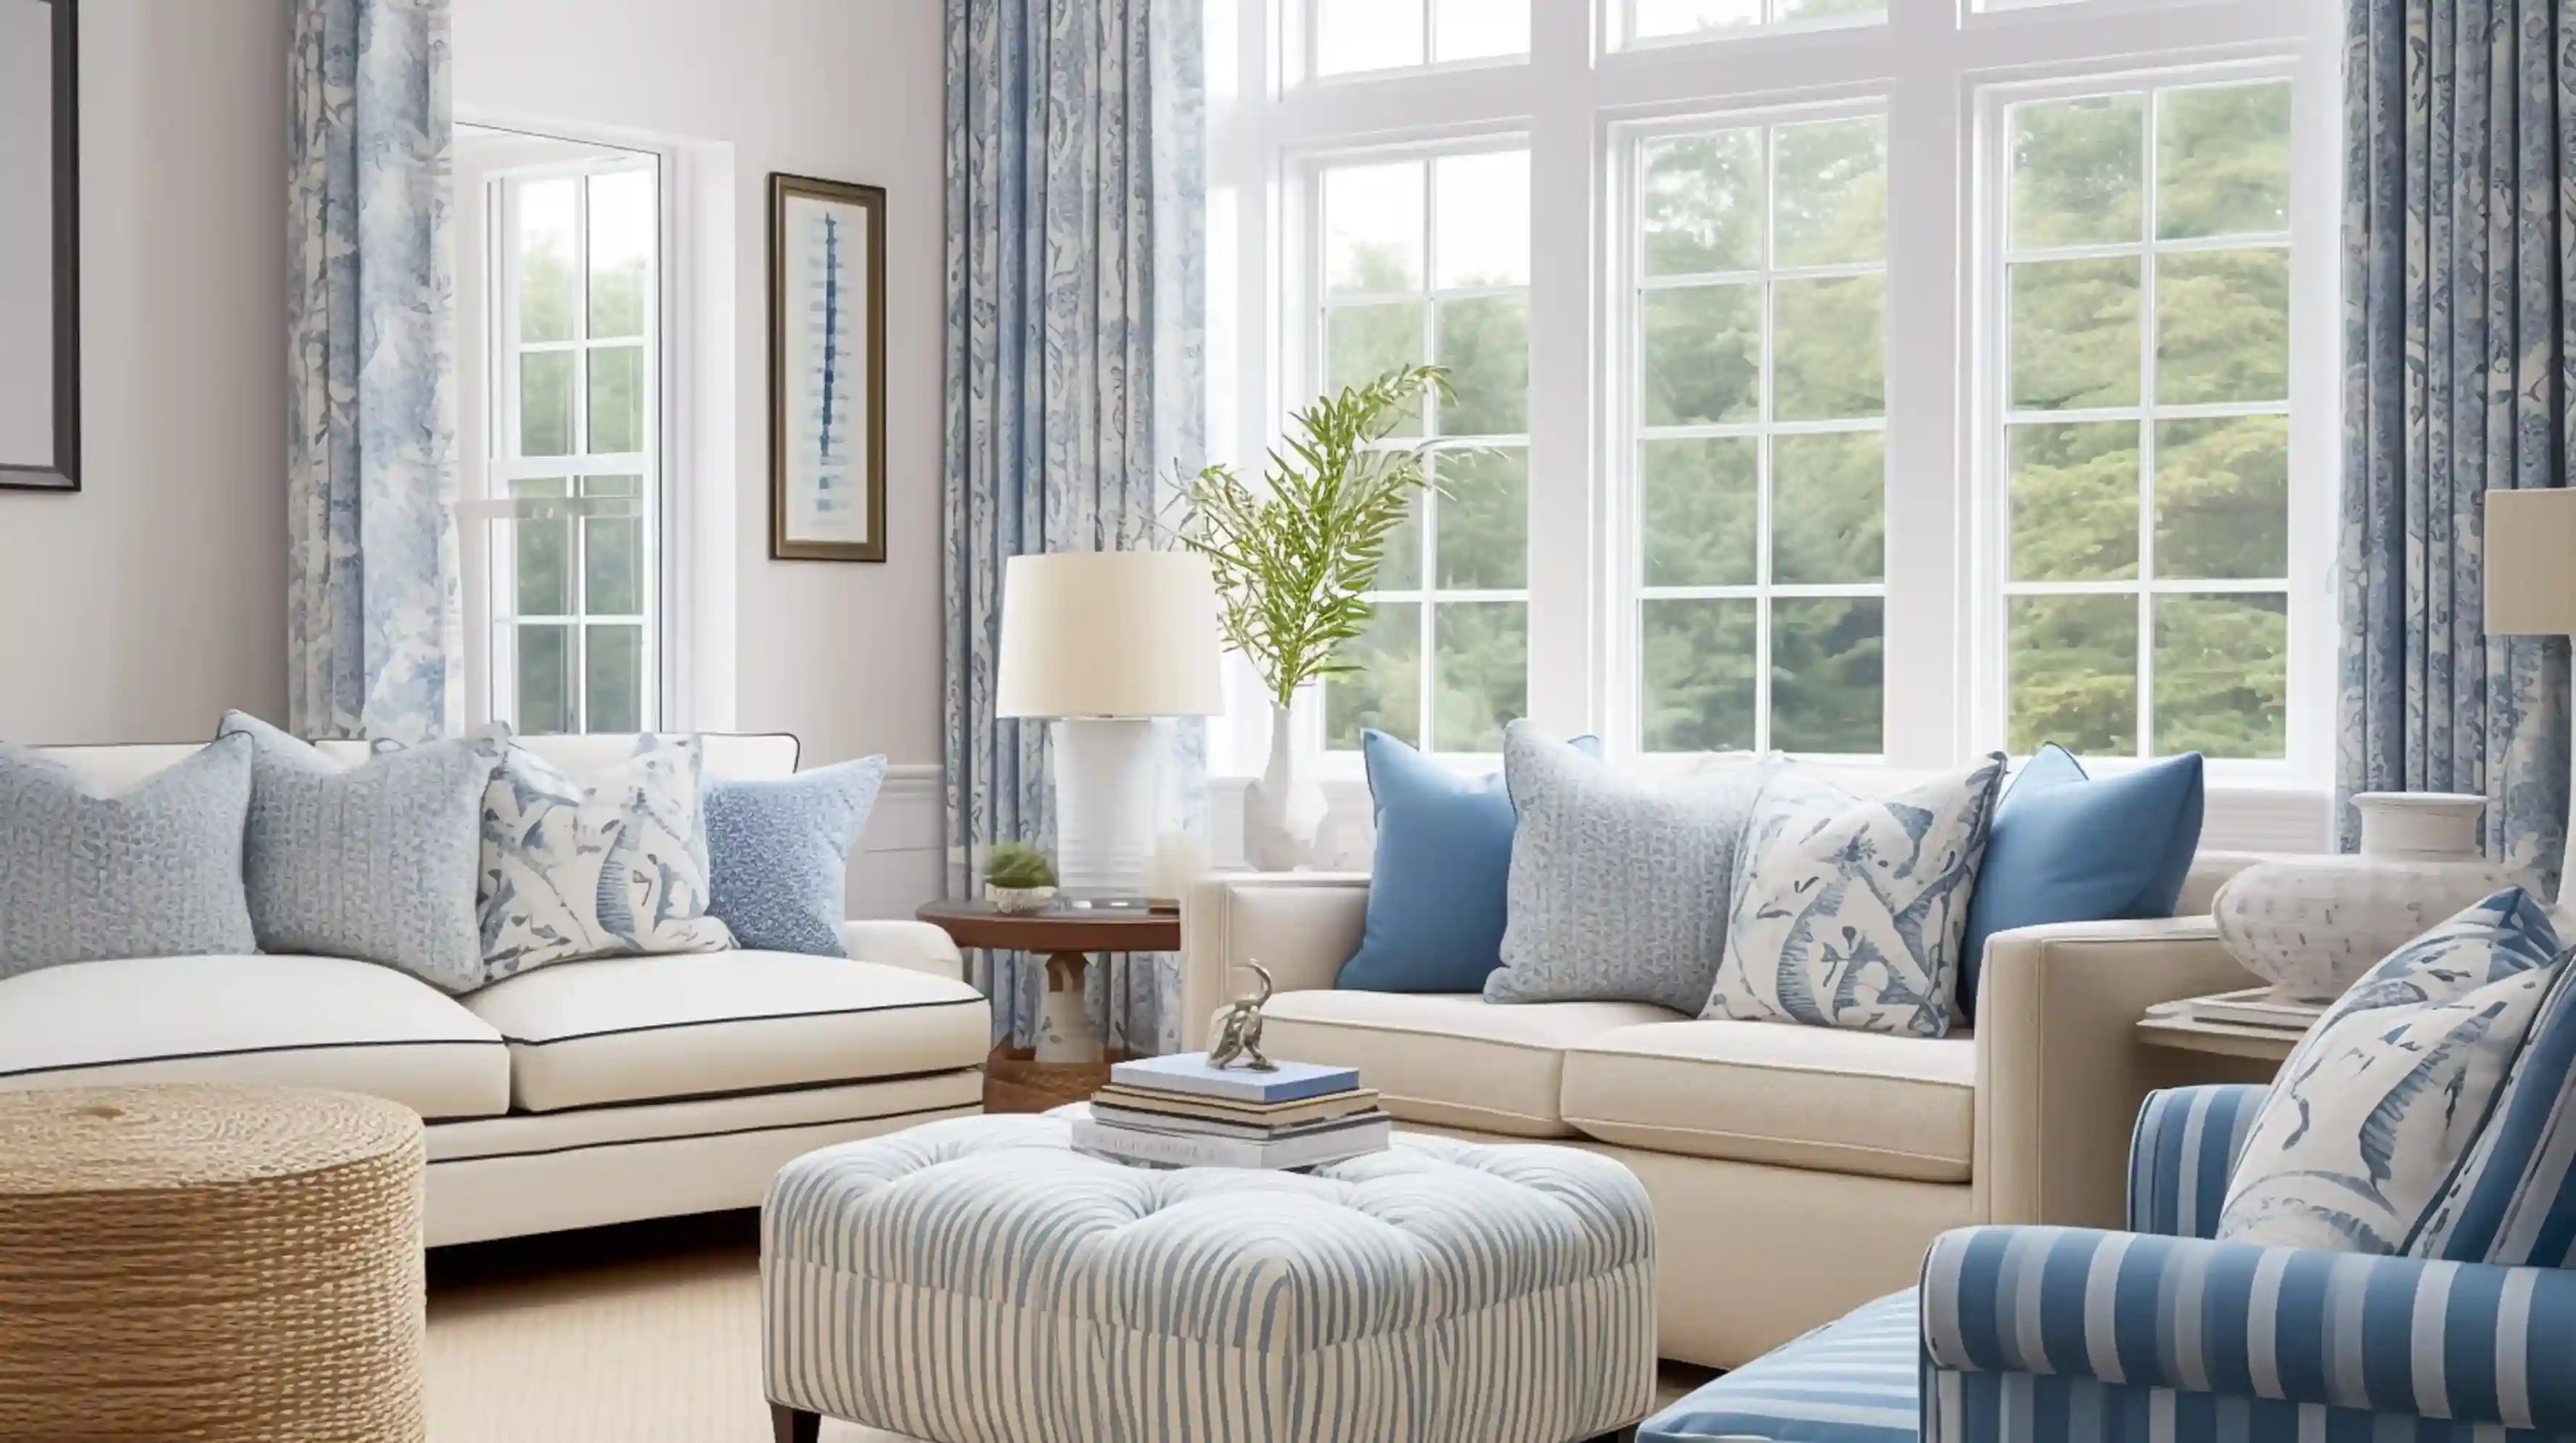 Salon w stylu hampton w biało-niebieskim kolorze. Dwie kanapy z poduszkami, przed nimi siedzisko, a obok niego fotel.